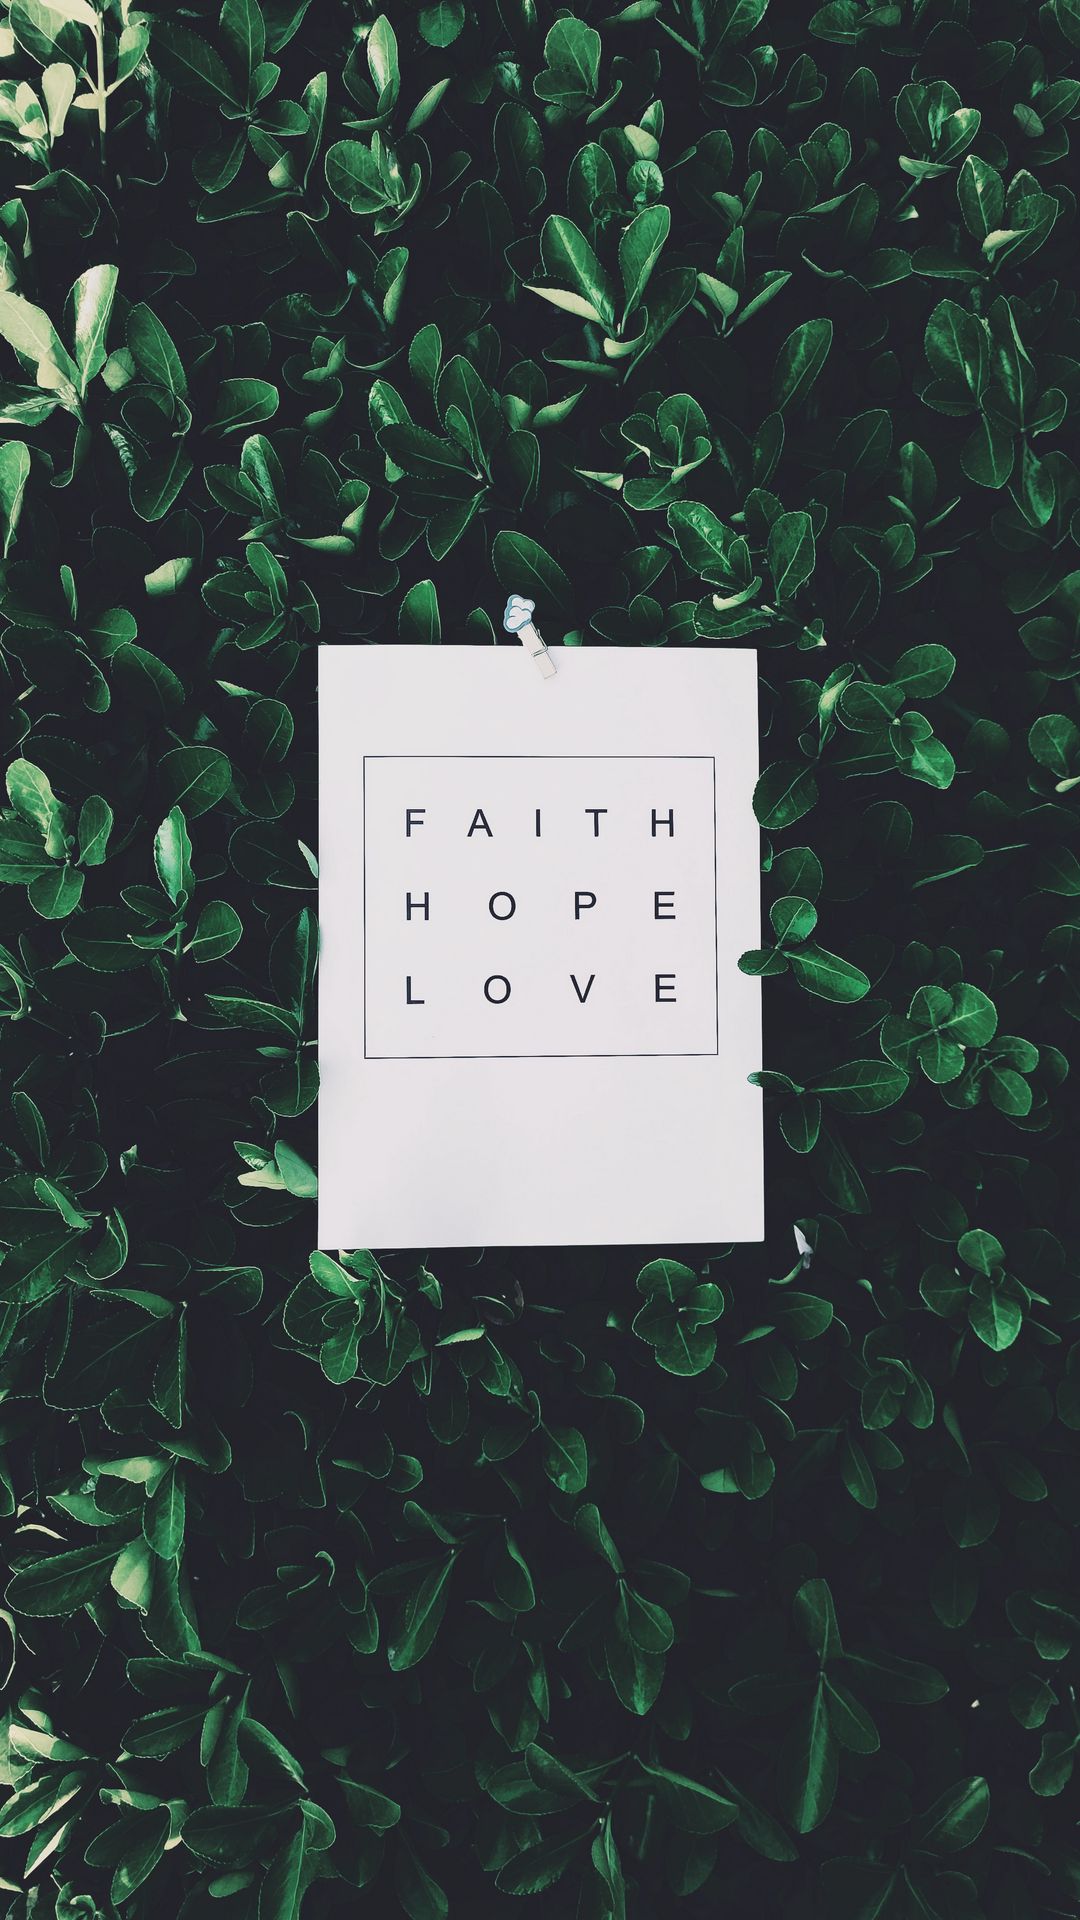 Faith hope love wallpaper  Faith in love Faith hope Faith hope love